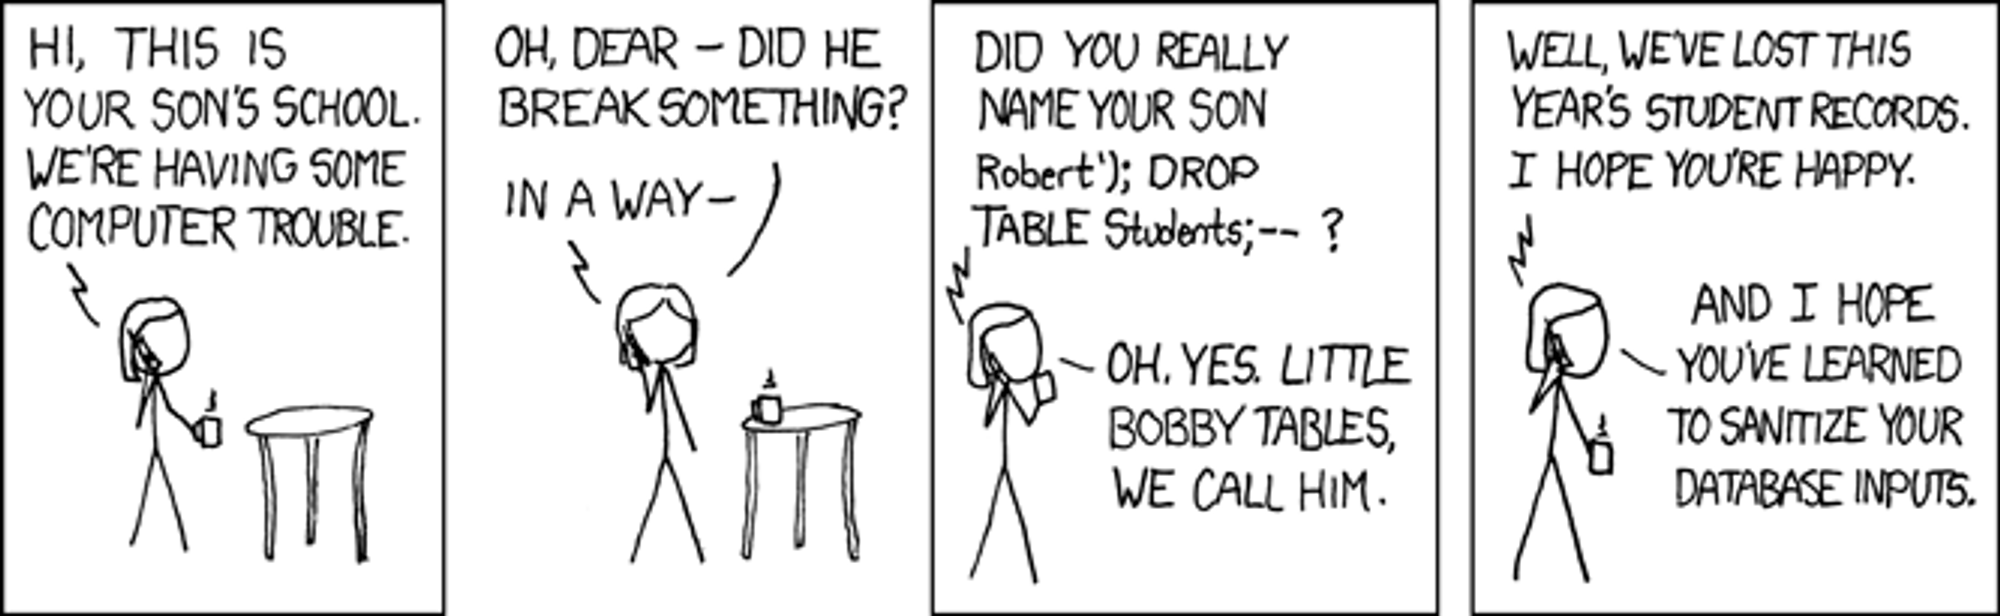 Tegneseriestripe med sønn som heter «Robert') DROP TABLE Students;--». 